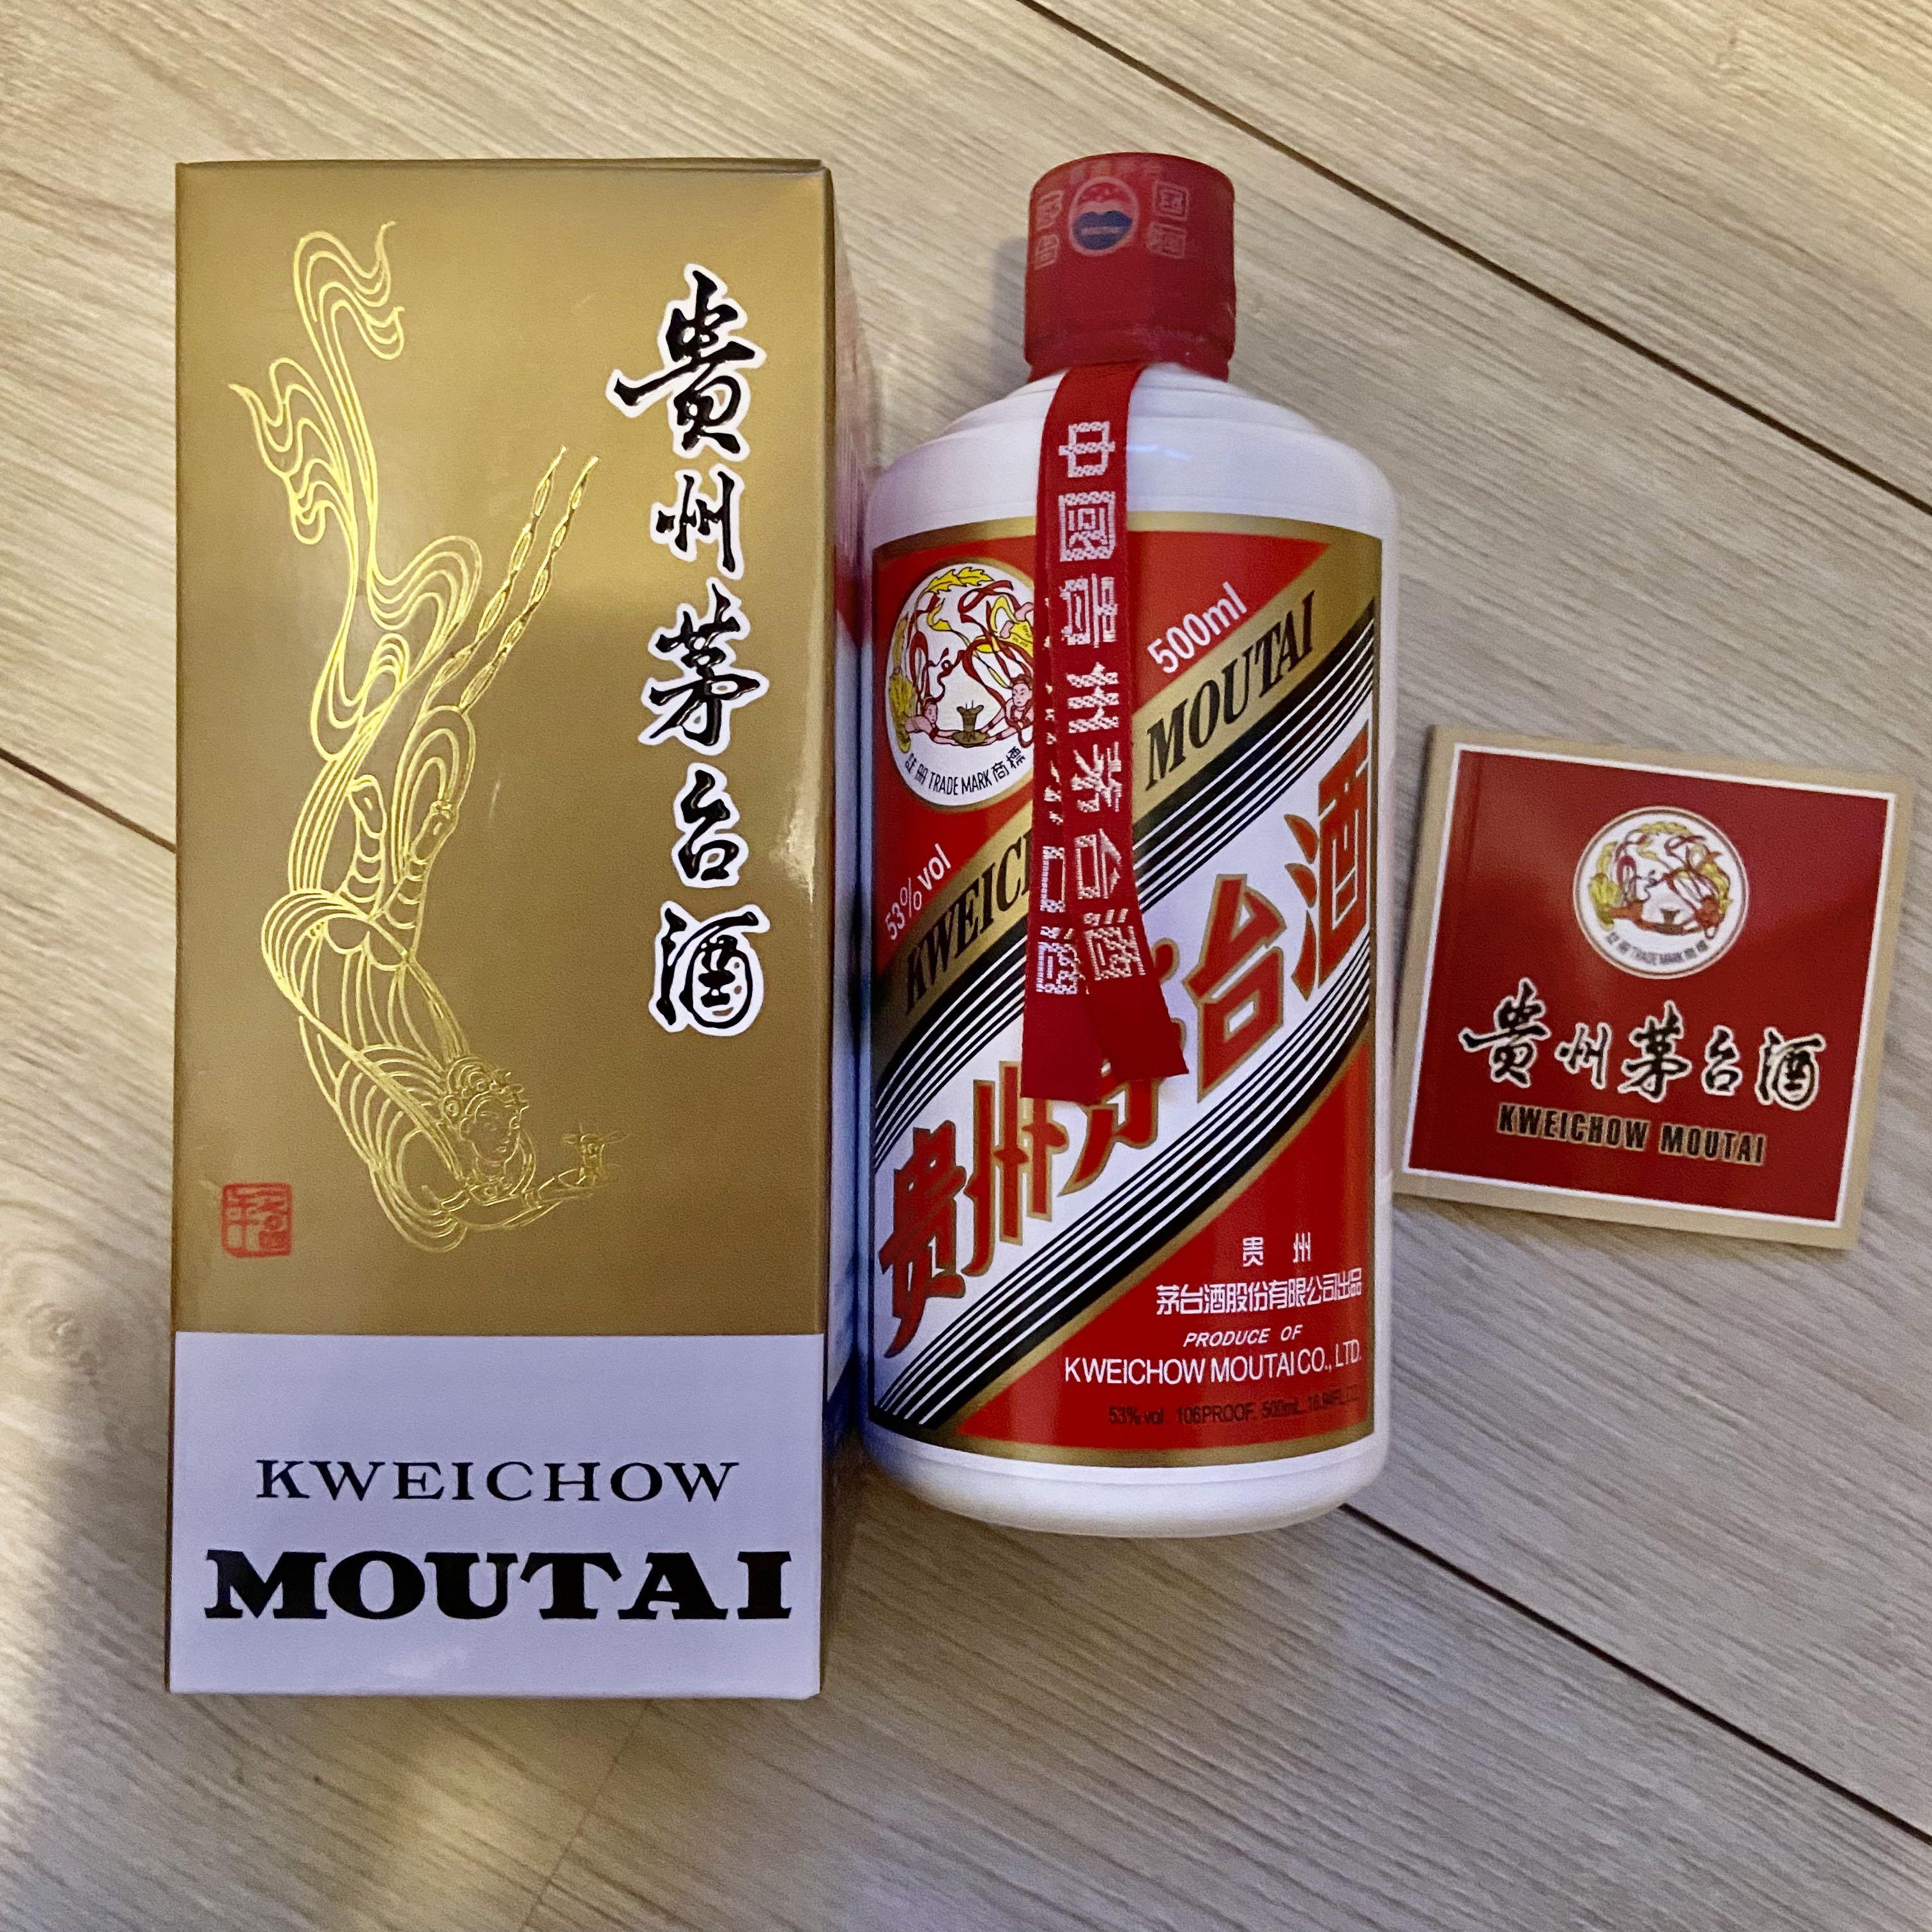 2016 貴州茅台酒(KWEICHOW MOUTAI) | nate-hospital.com